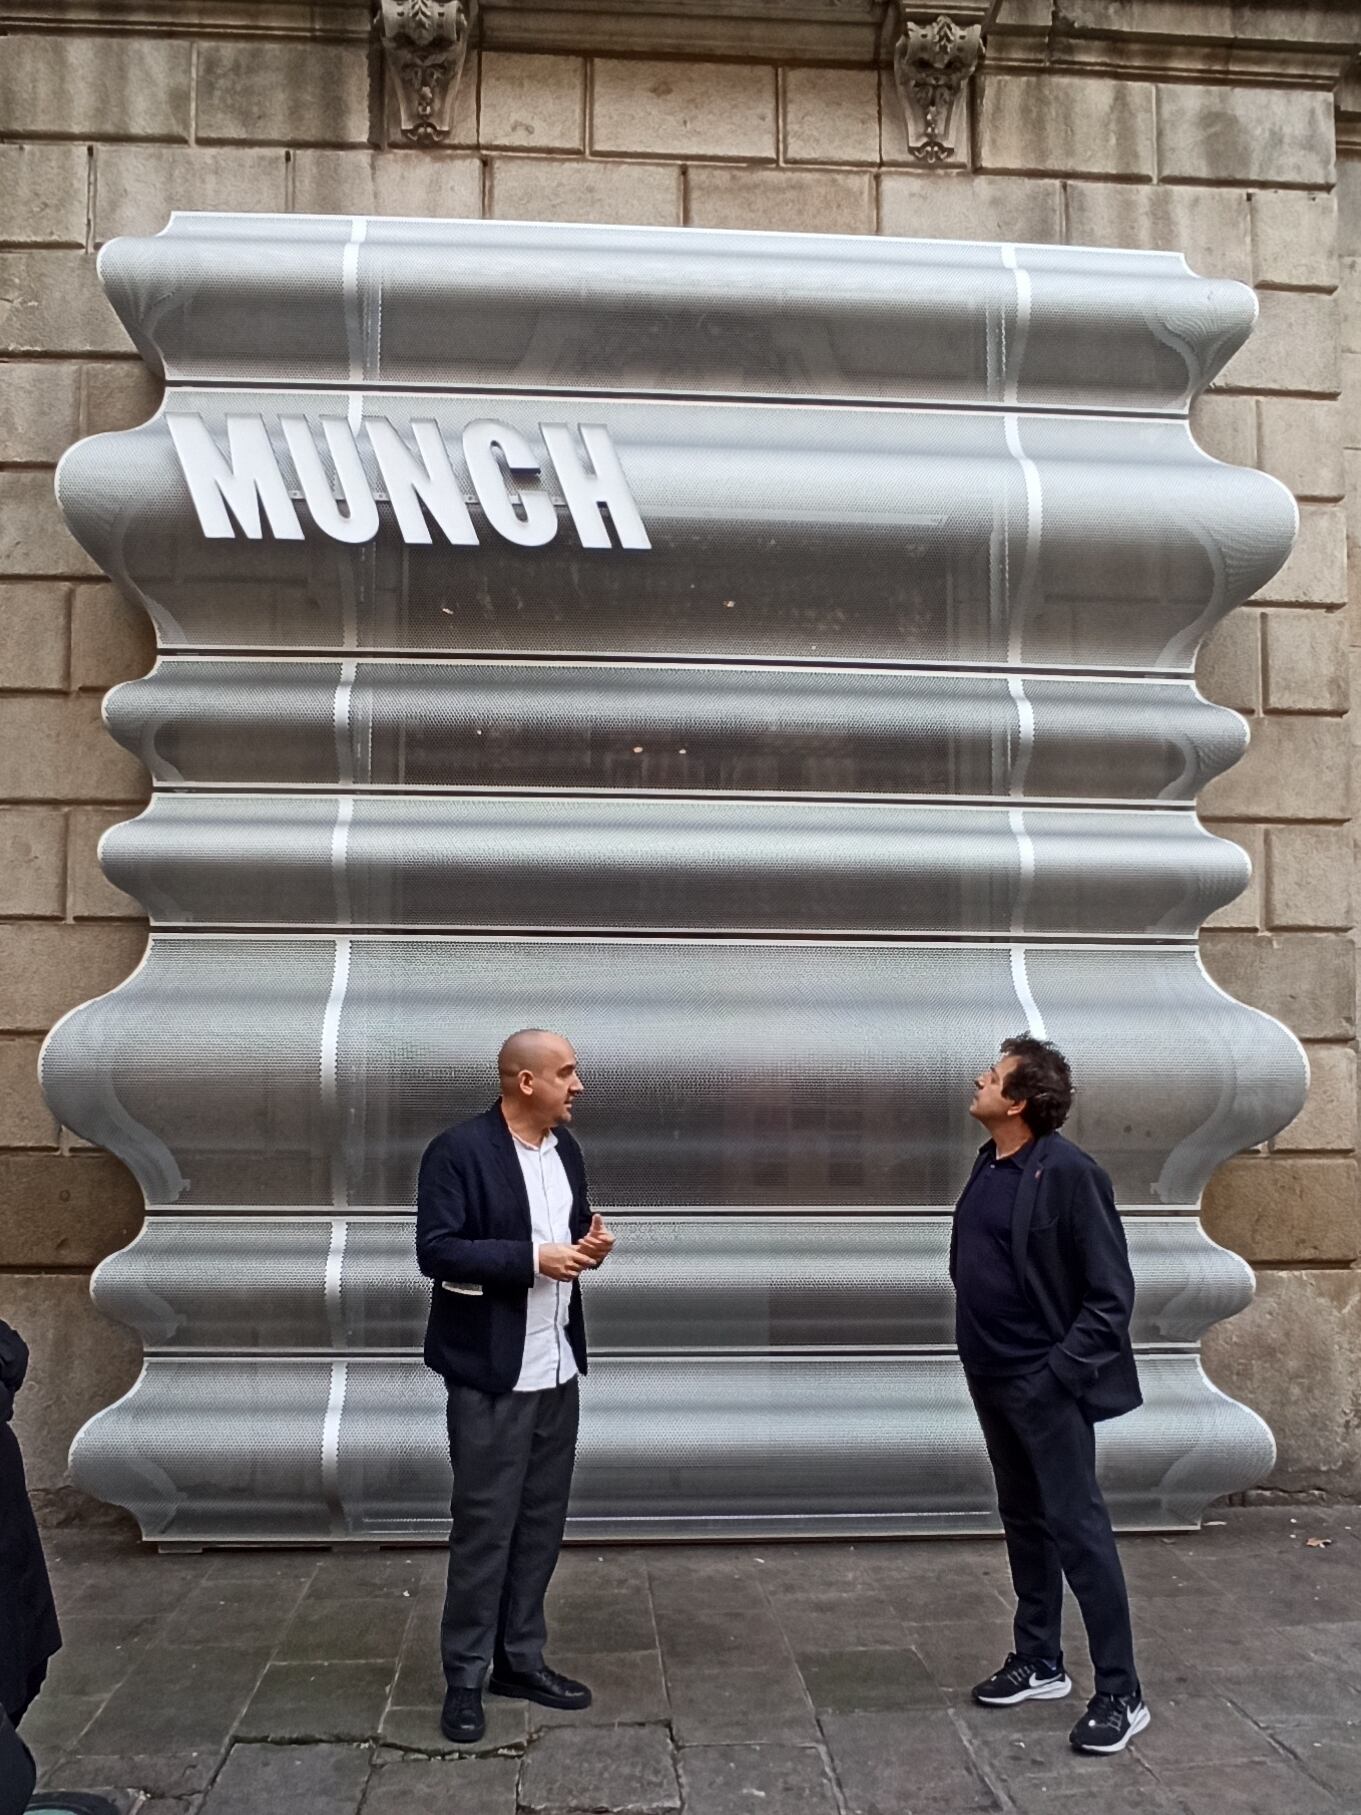 El arquitecto Juan Herreros (derecha) y su socio Jens Richter en la puerta de La Virreina, junto al fragmento de fachada del museo Munch de Oslo.